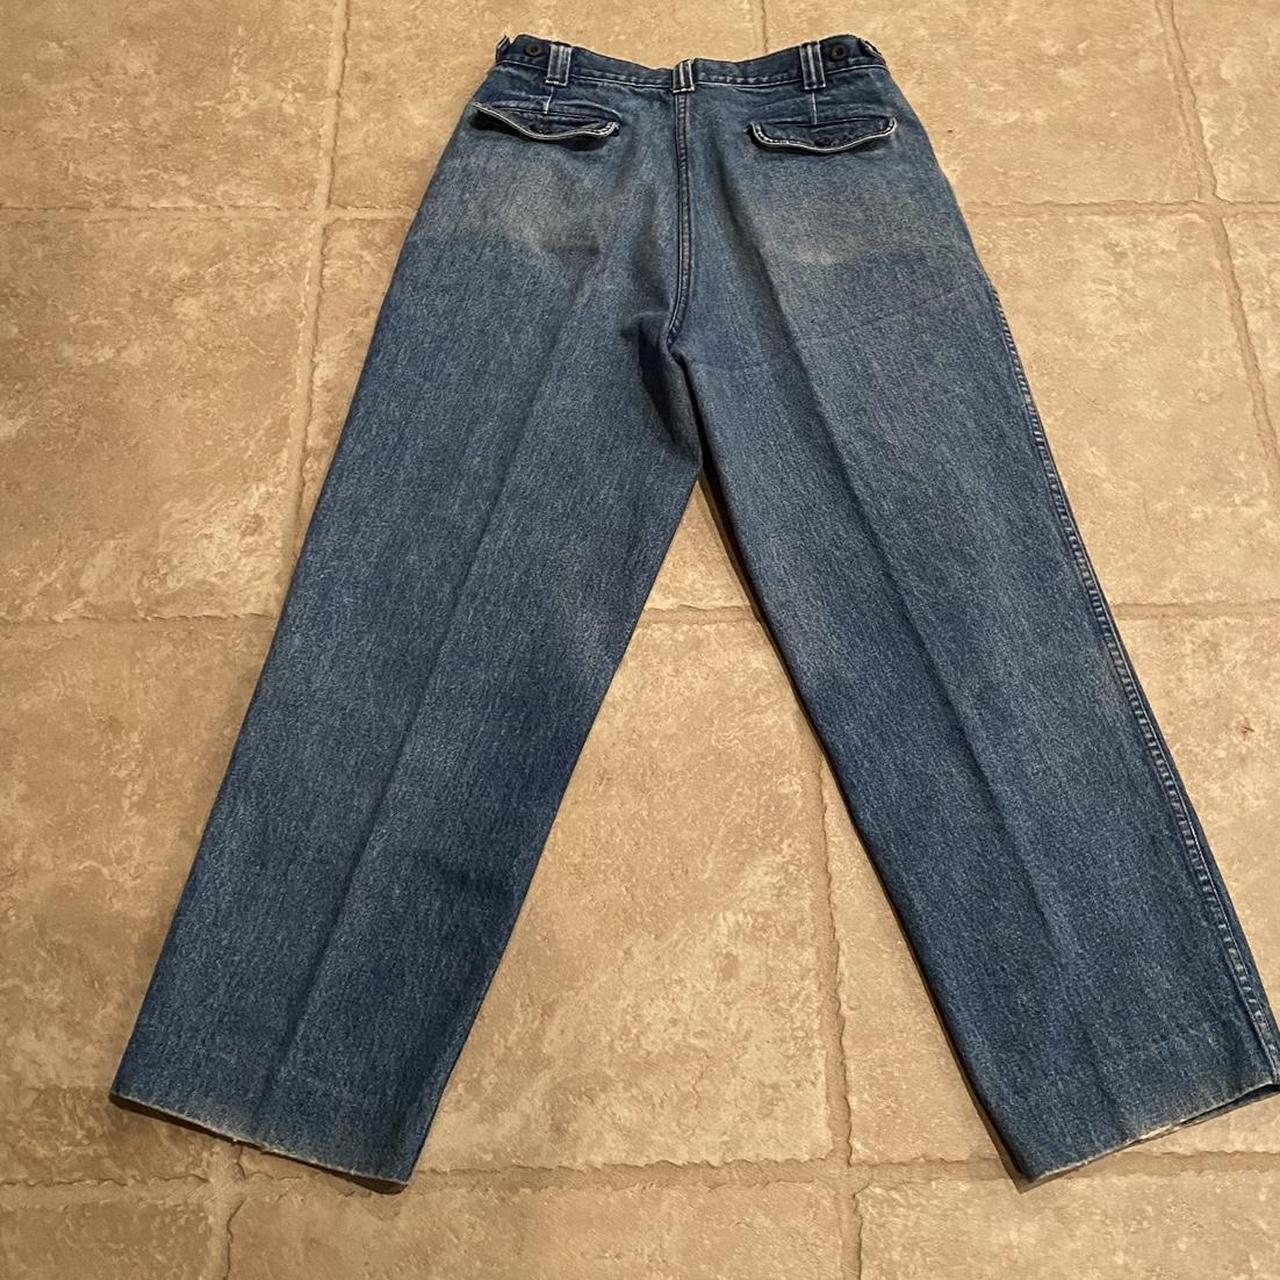 Rare Vintage Yves Saint Laurent Jeans - size 32 - Depop